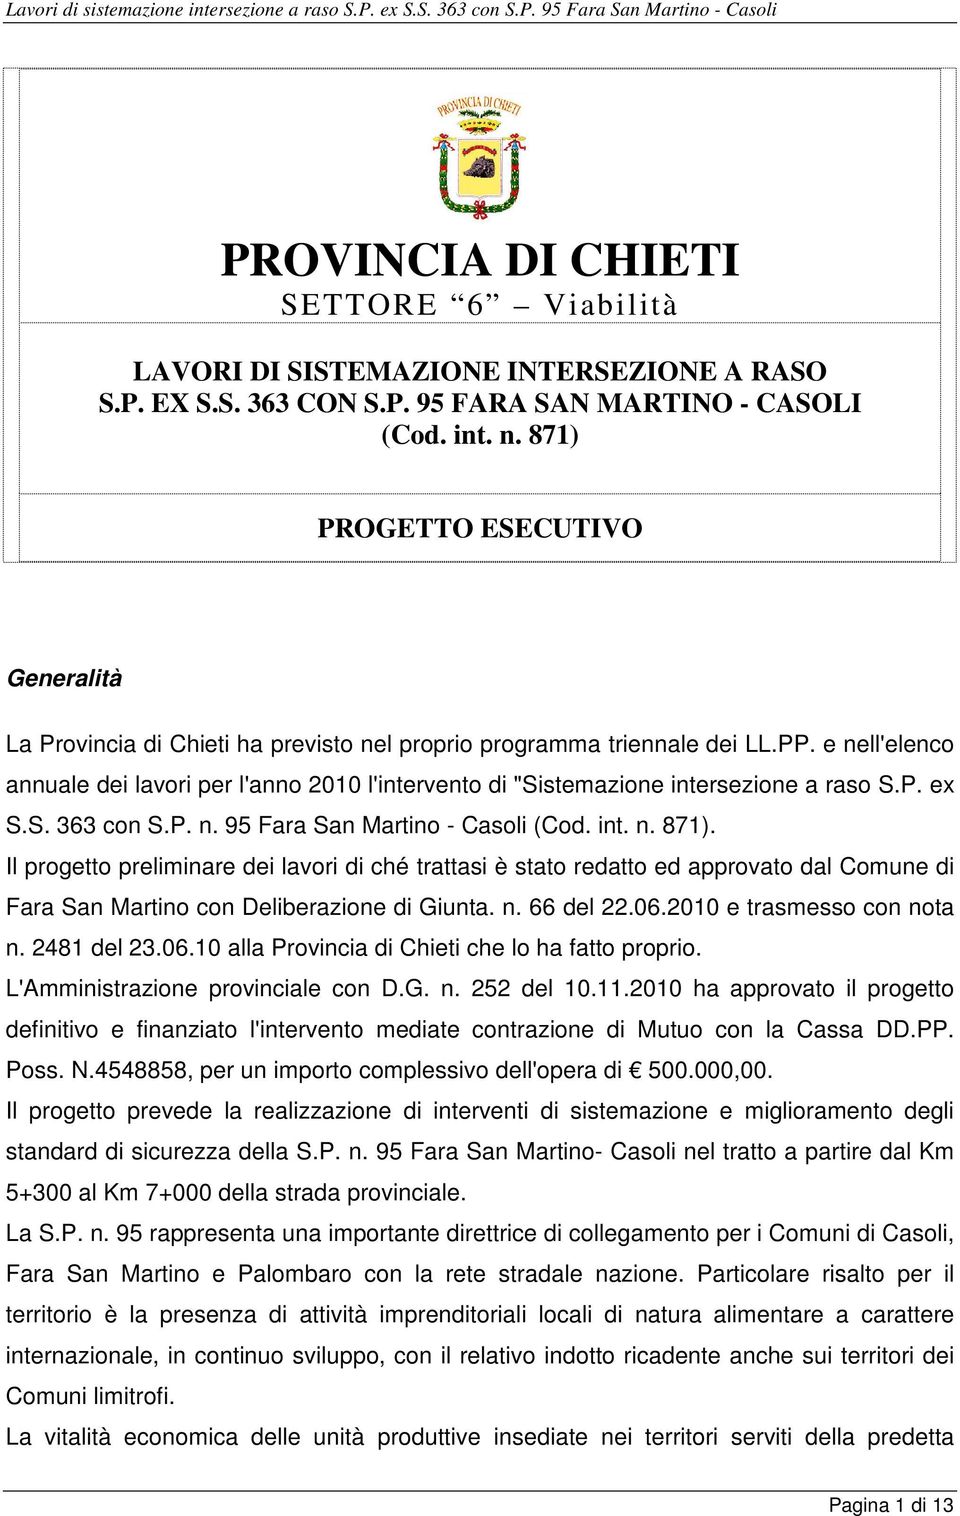 e nell'elenco annuale dei lavori per l'anno 2010 l'intervento di "Sistemazione intersezione a raso S.P. ex S.S. 363 con S.P. n. 95 Fara San Martino - Casoli (Cod. int. n. 871).